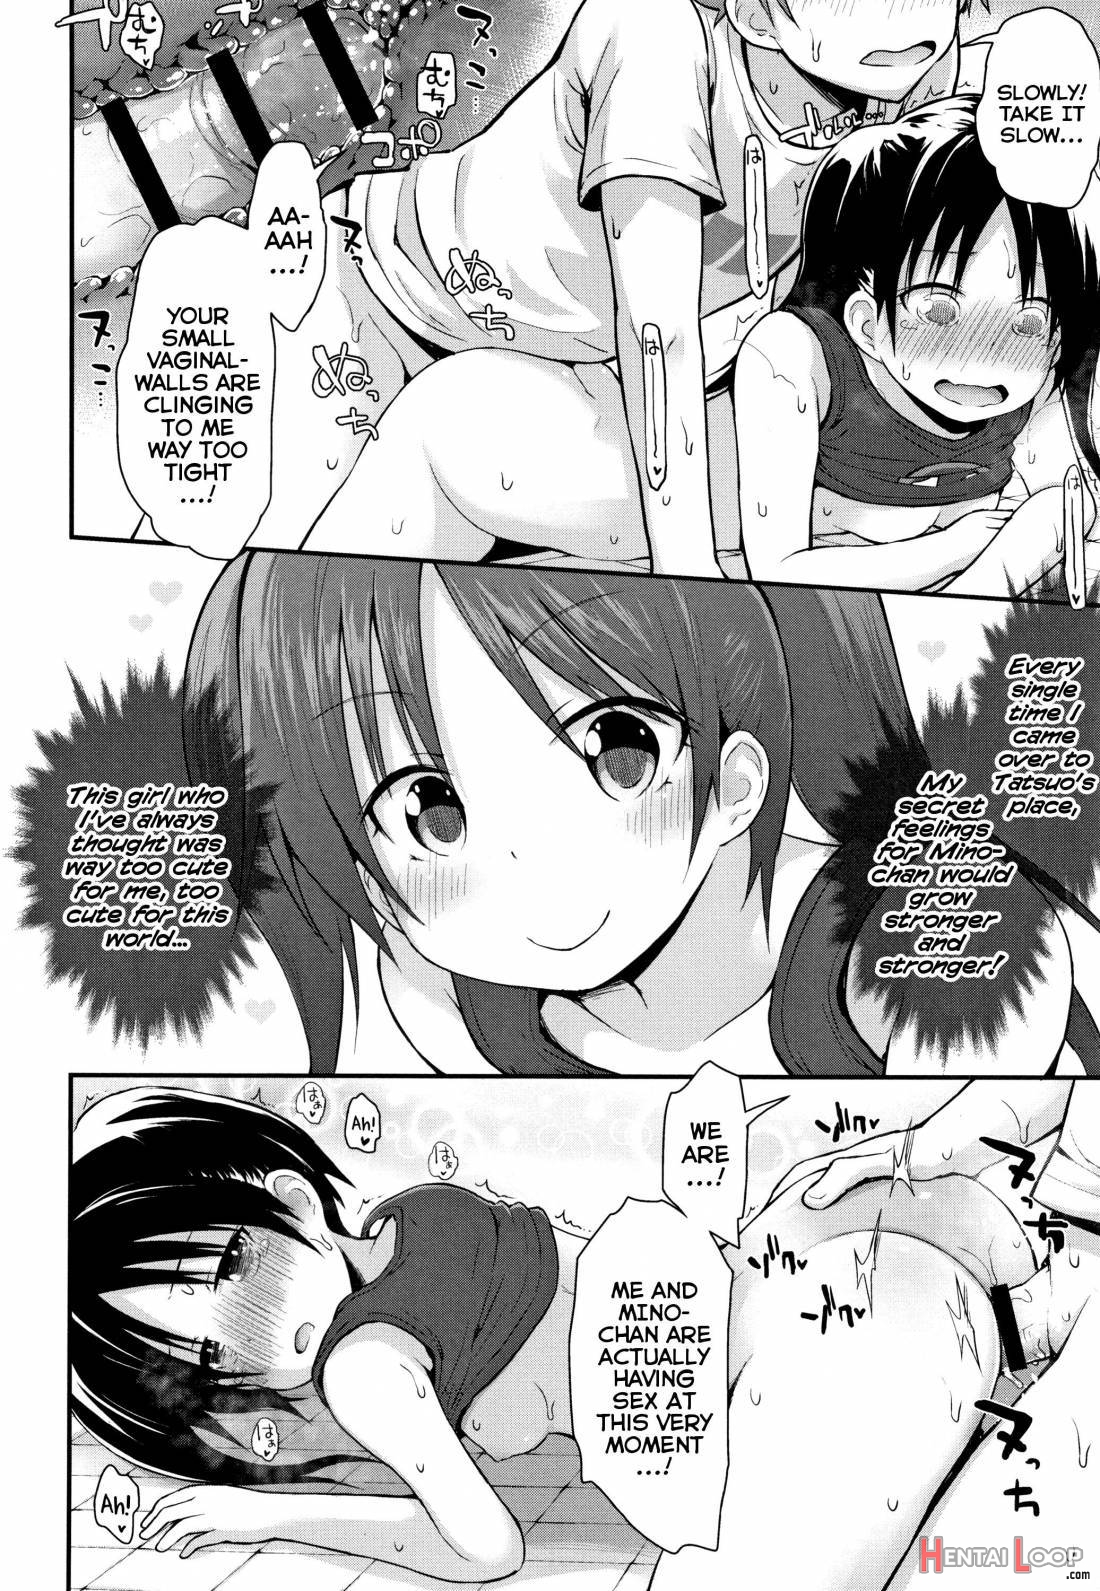 Chiisana Koukishin page 40